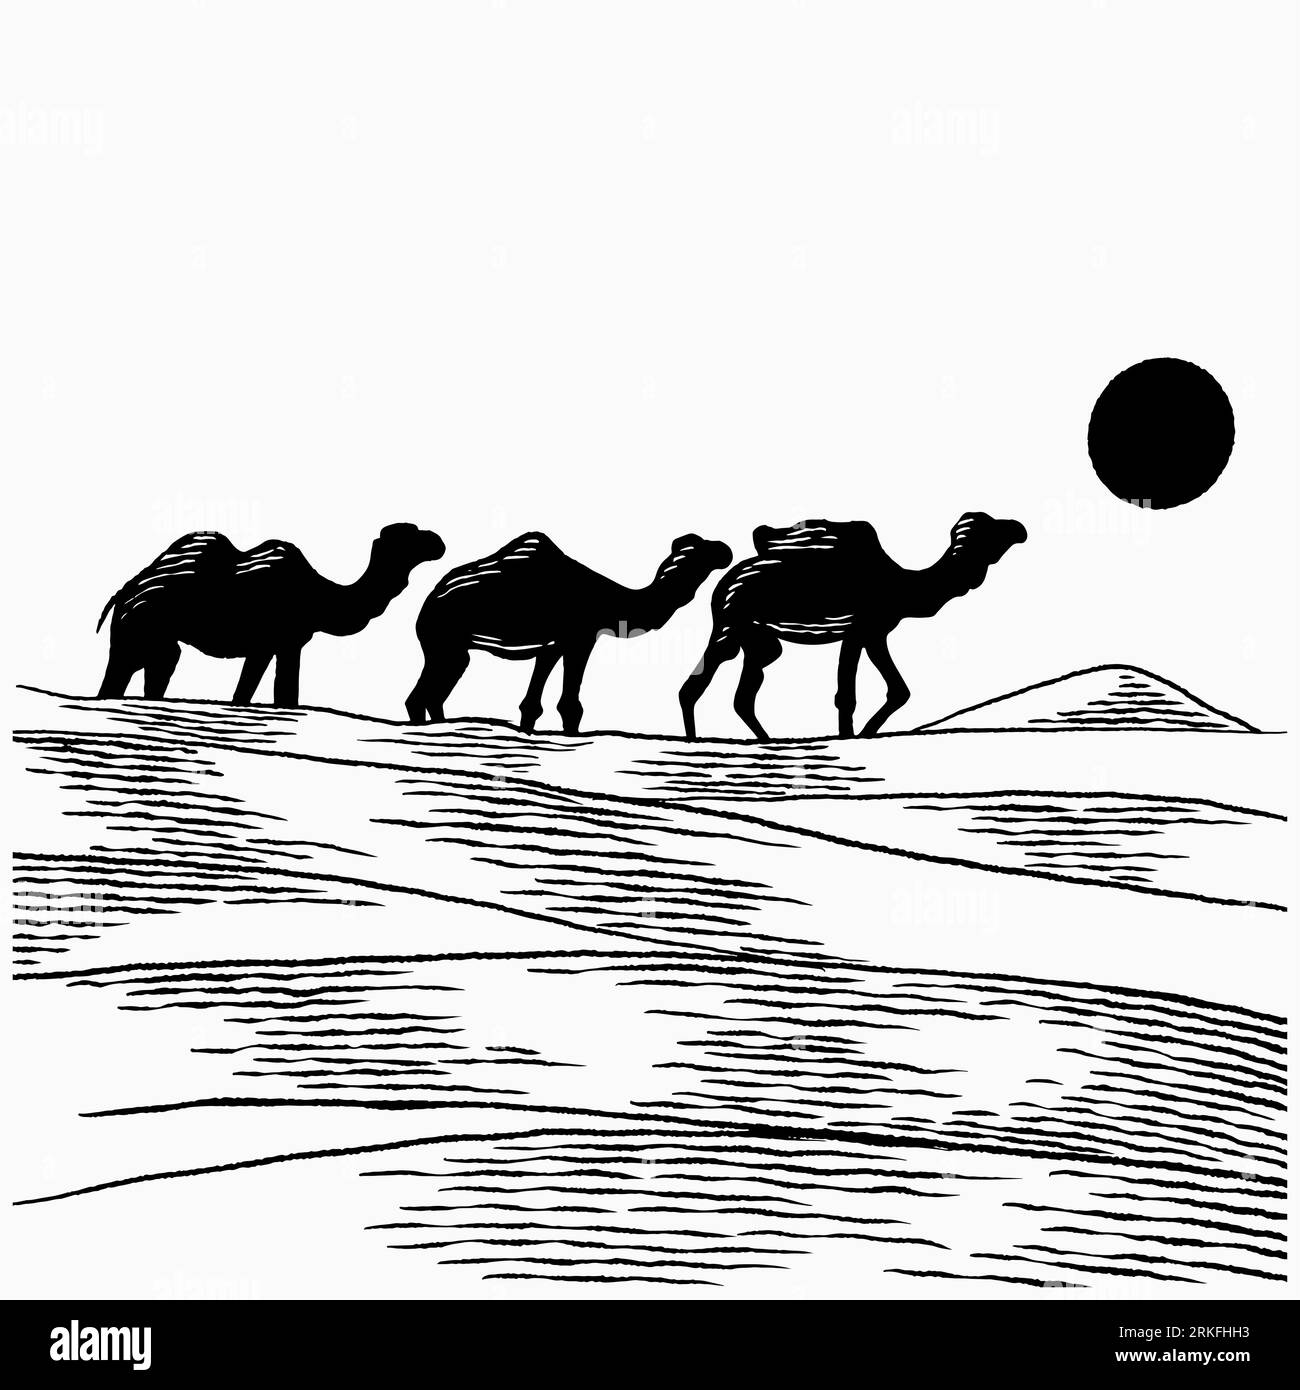 Chameaux dessinés à la main marchent à travers le désert. Caravane traversant les dunes de sable illustration vectorielle isolée. Concept de caravane Camel en croquis vintage Illustration de Vecteur